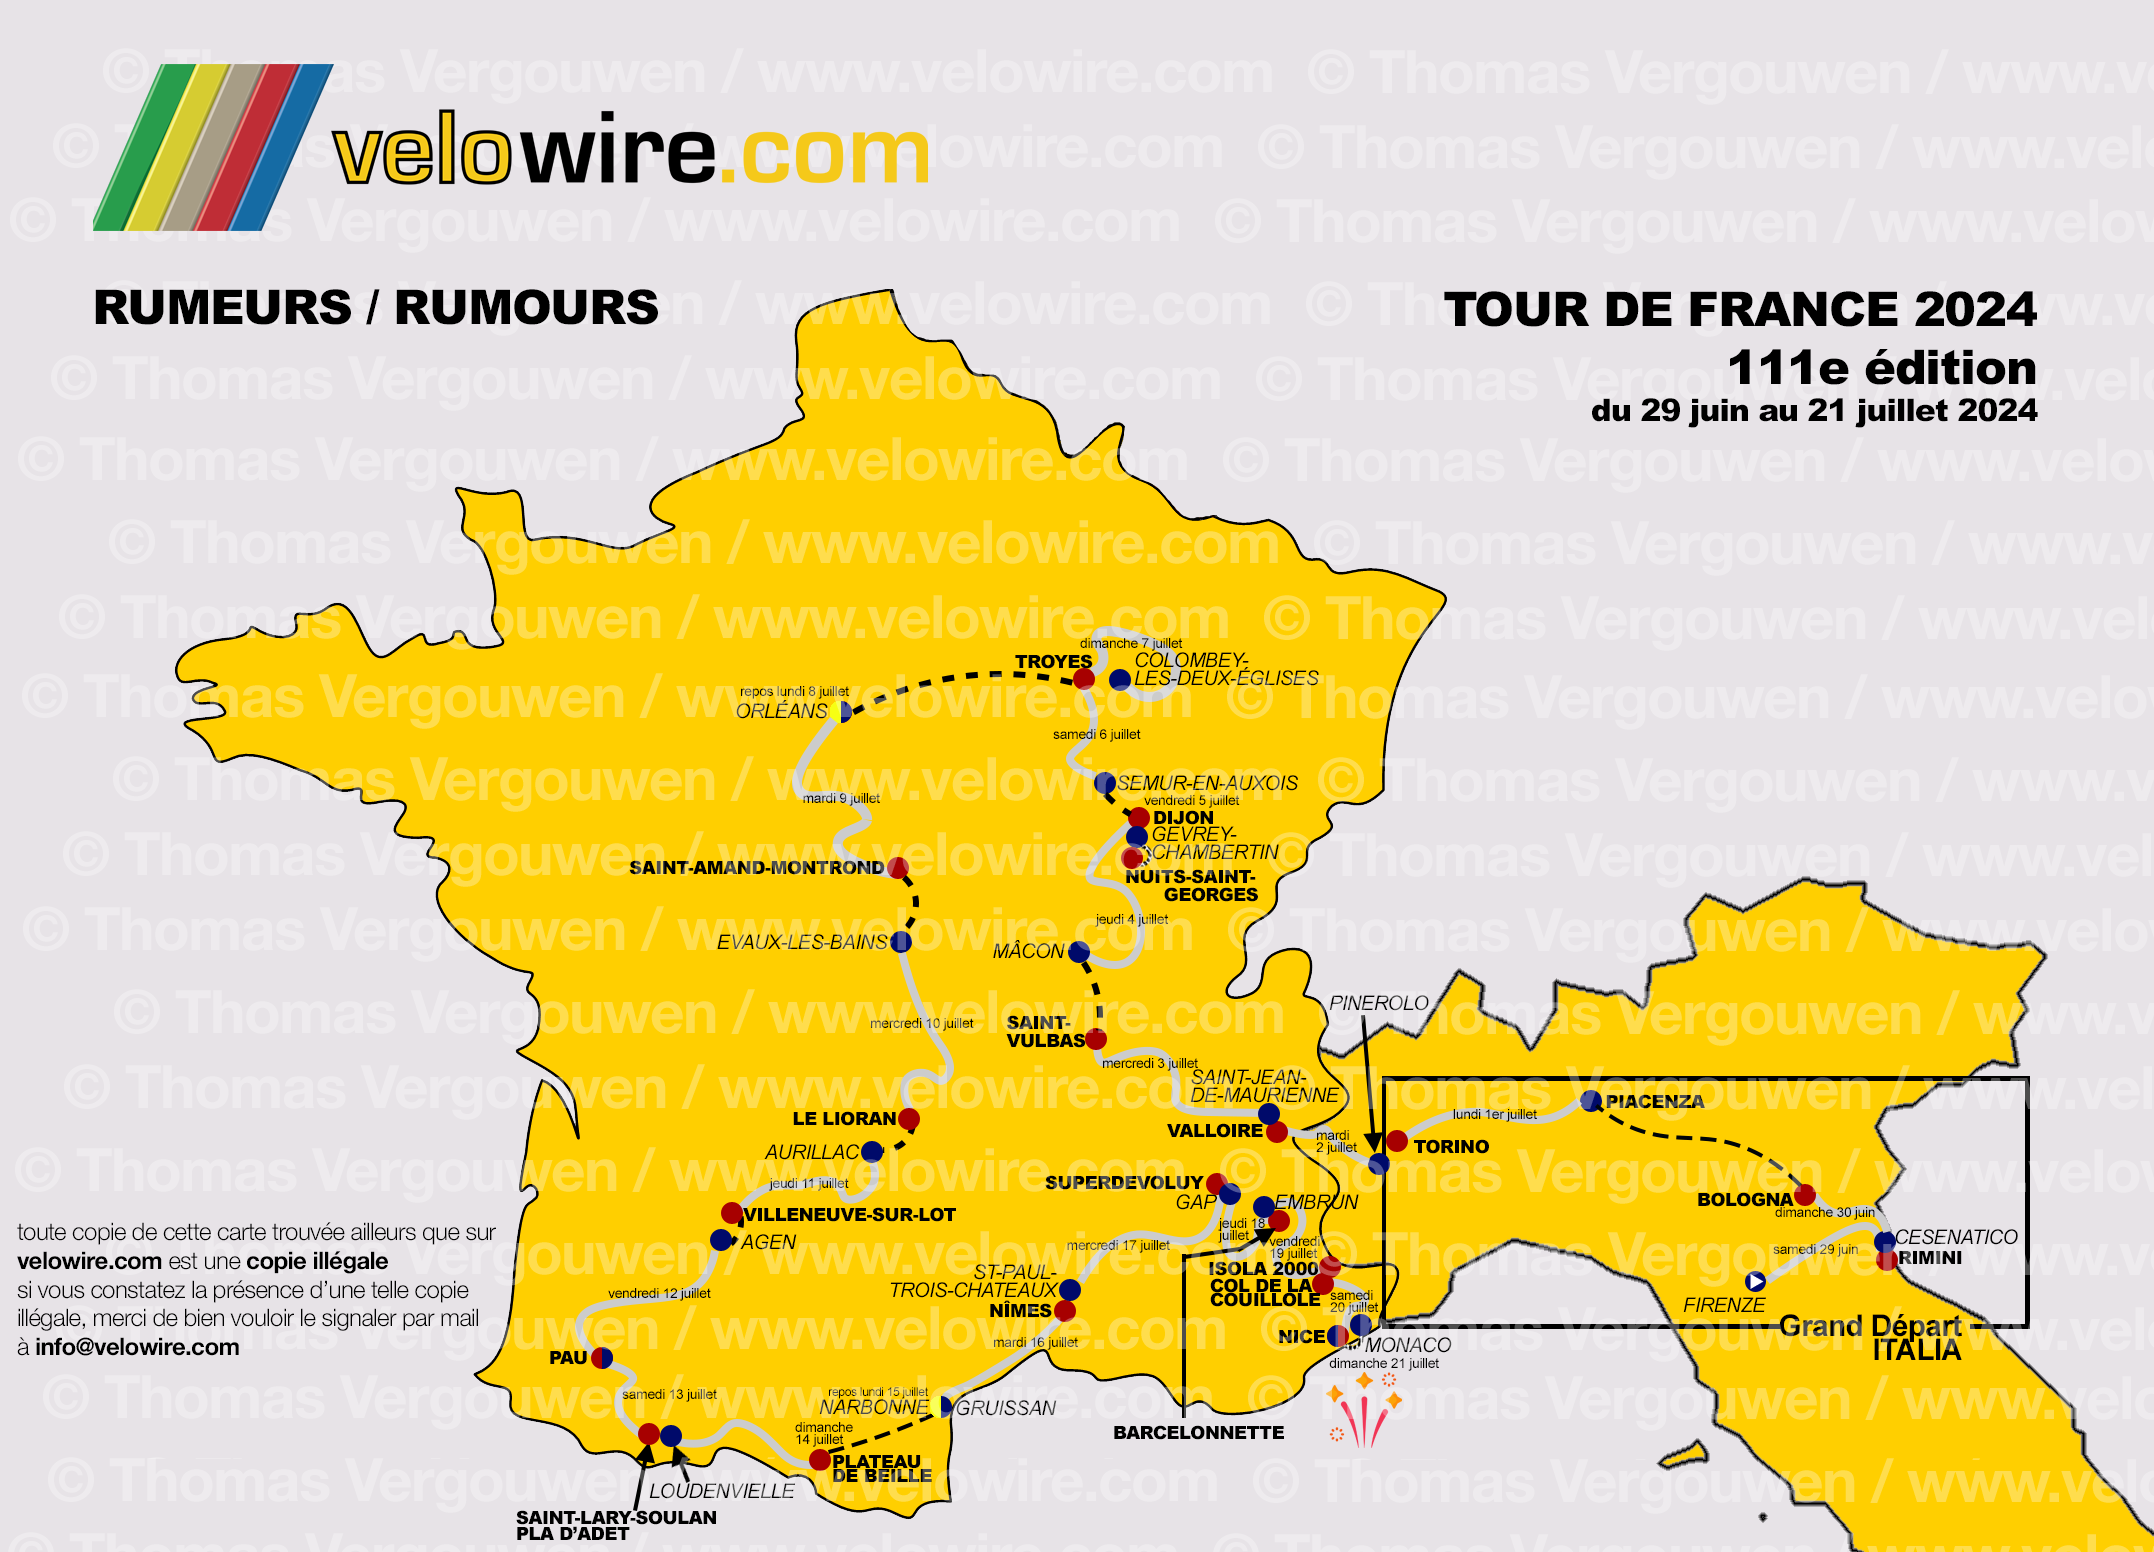 Het Grand Départ van de Tour de France 2024 in Italië! En de finish met